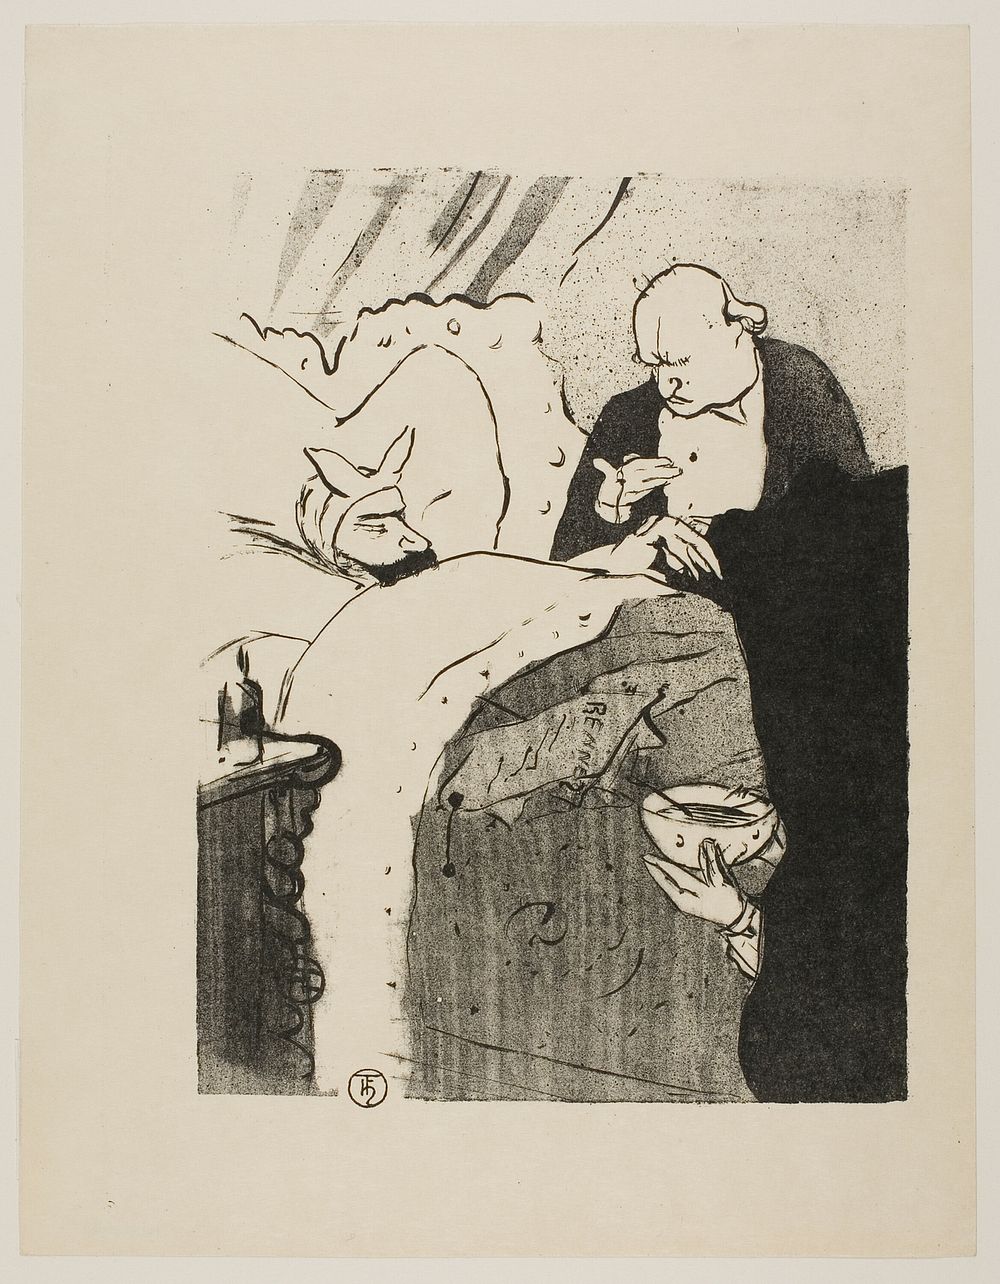 Carnot is Sick! by Henri de Toulouse-Lautrec